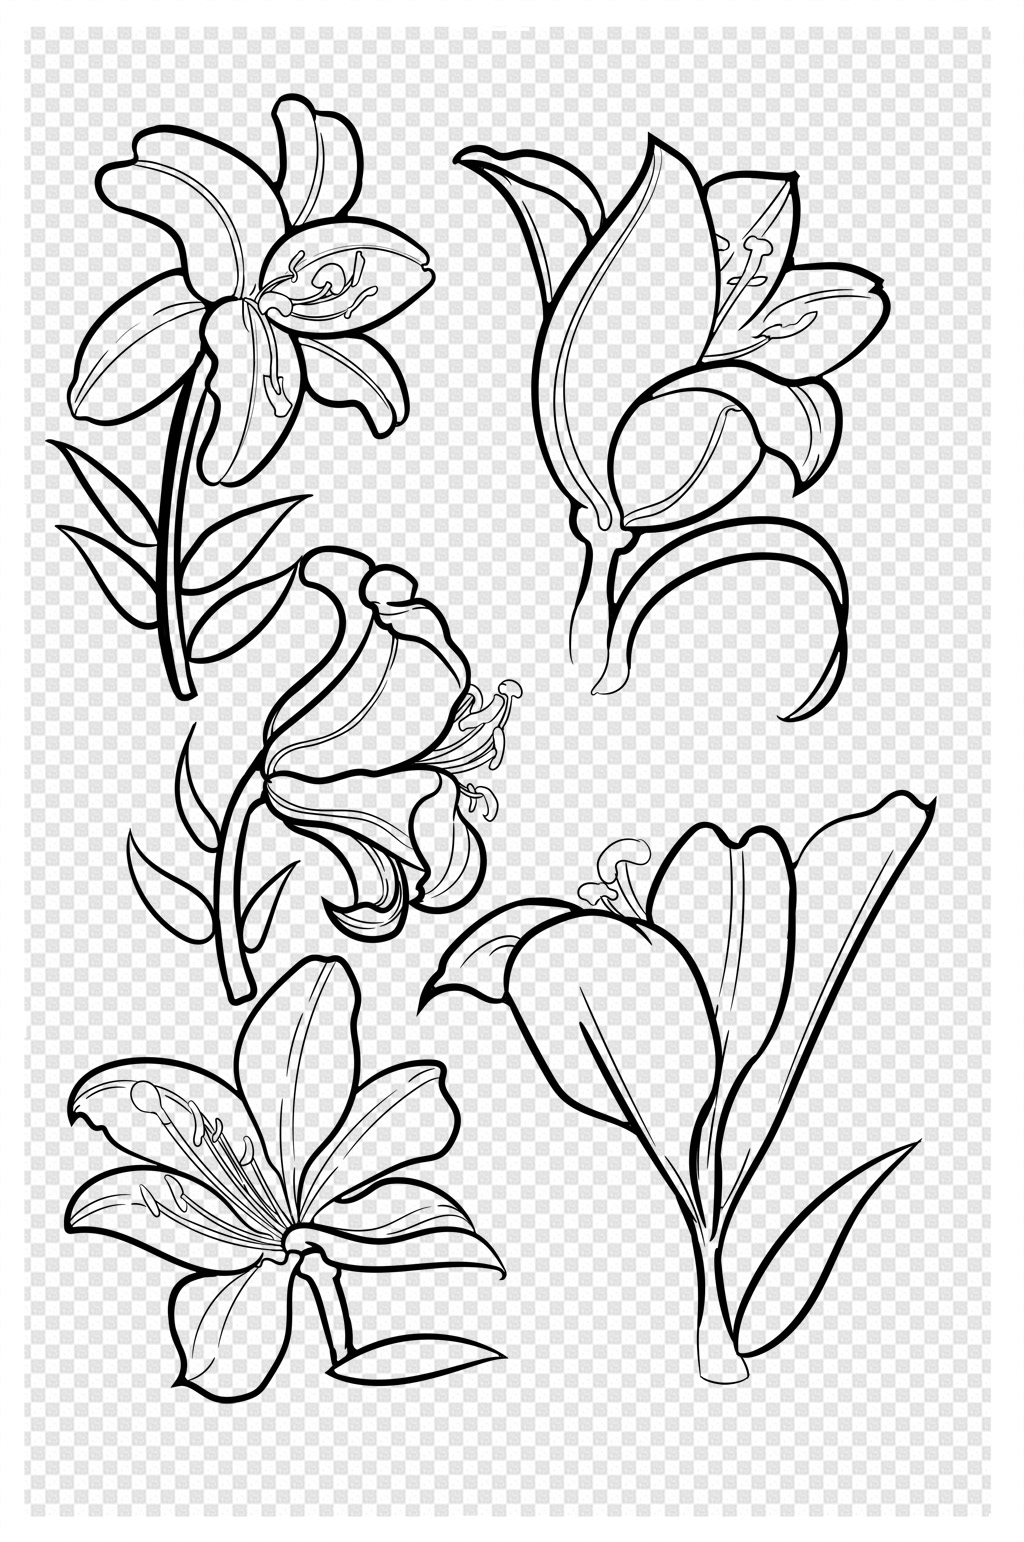 动漫花朵素材黑白图片